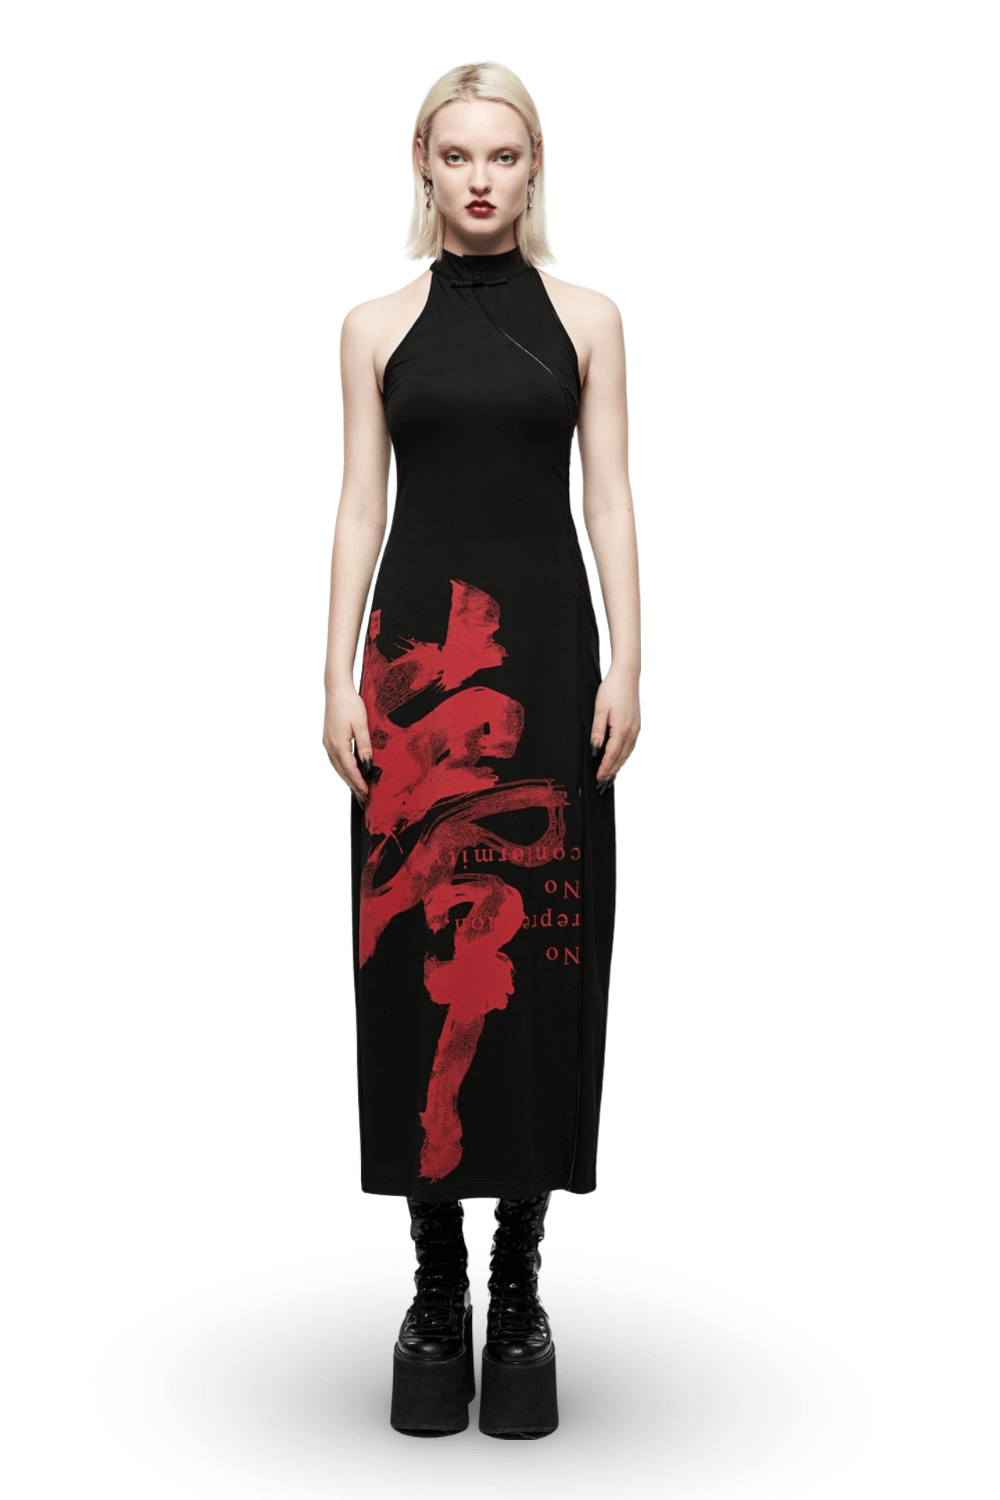 Chinese Ink Art Halter Dress with Side Slit Elegance